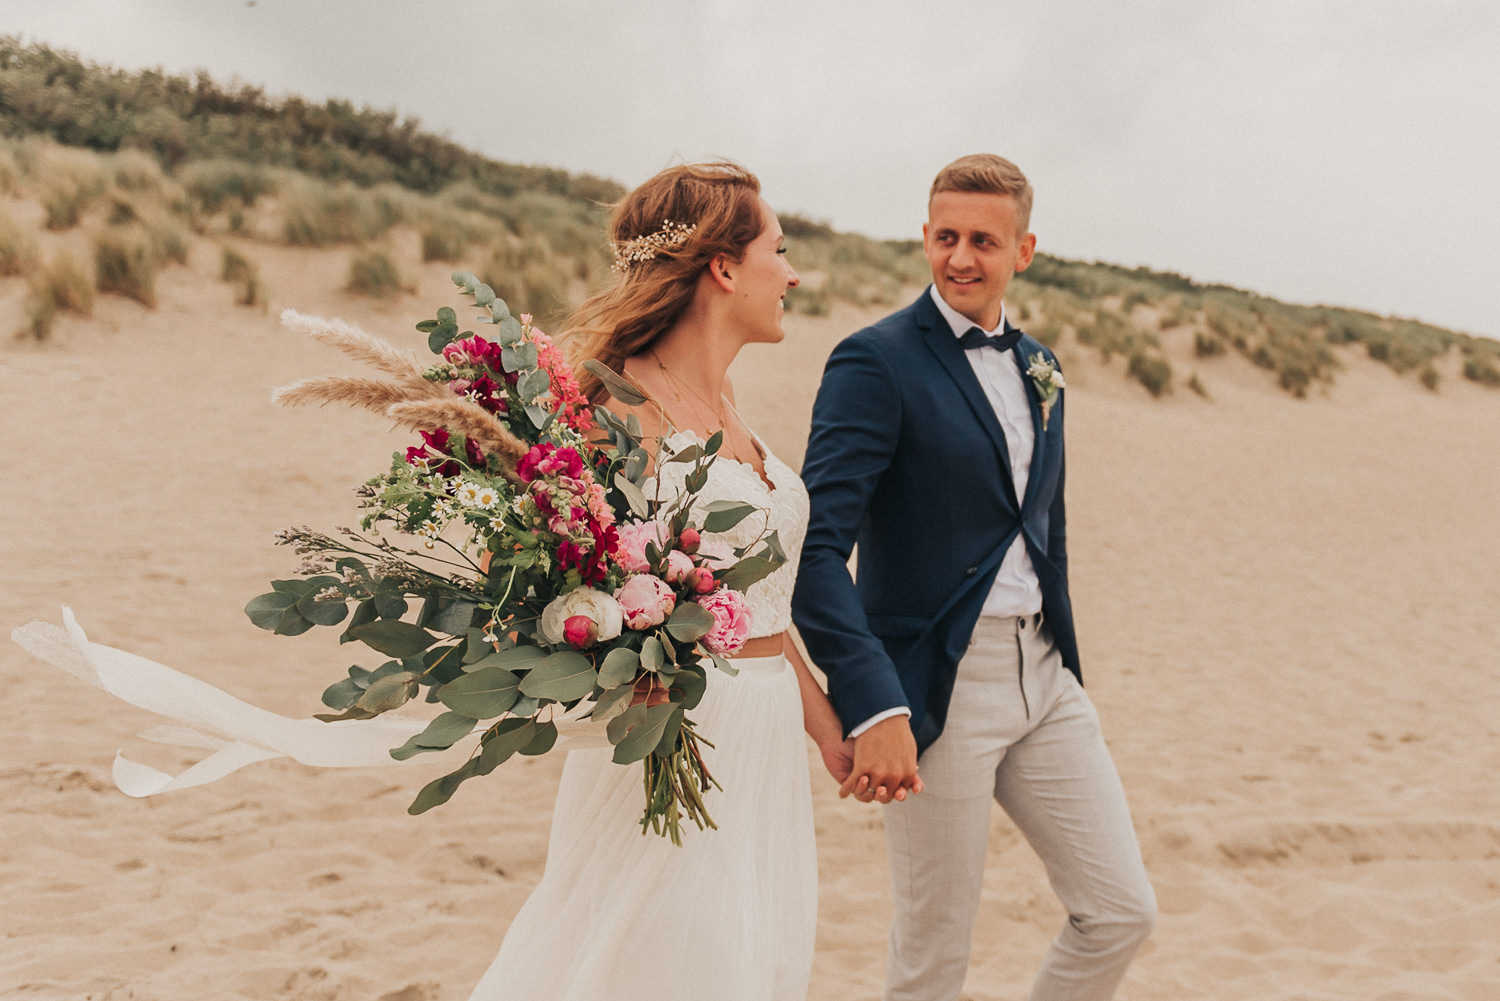 Strandhochzeit Niederlande, Strandhochzeit Holland, Hochzeitsfotograf, Beach wedding